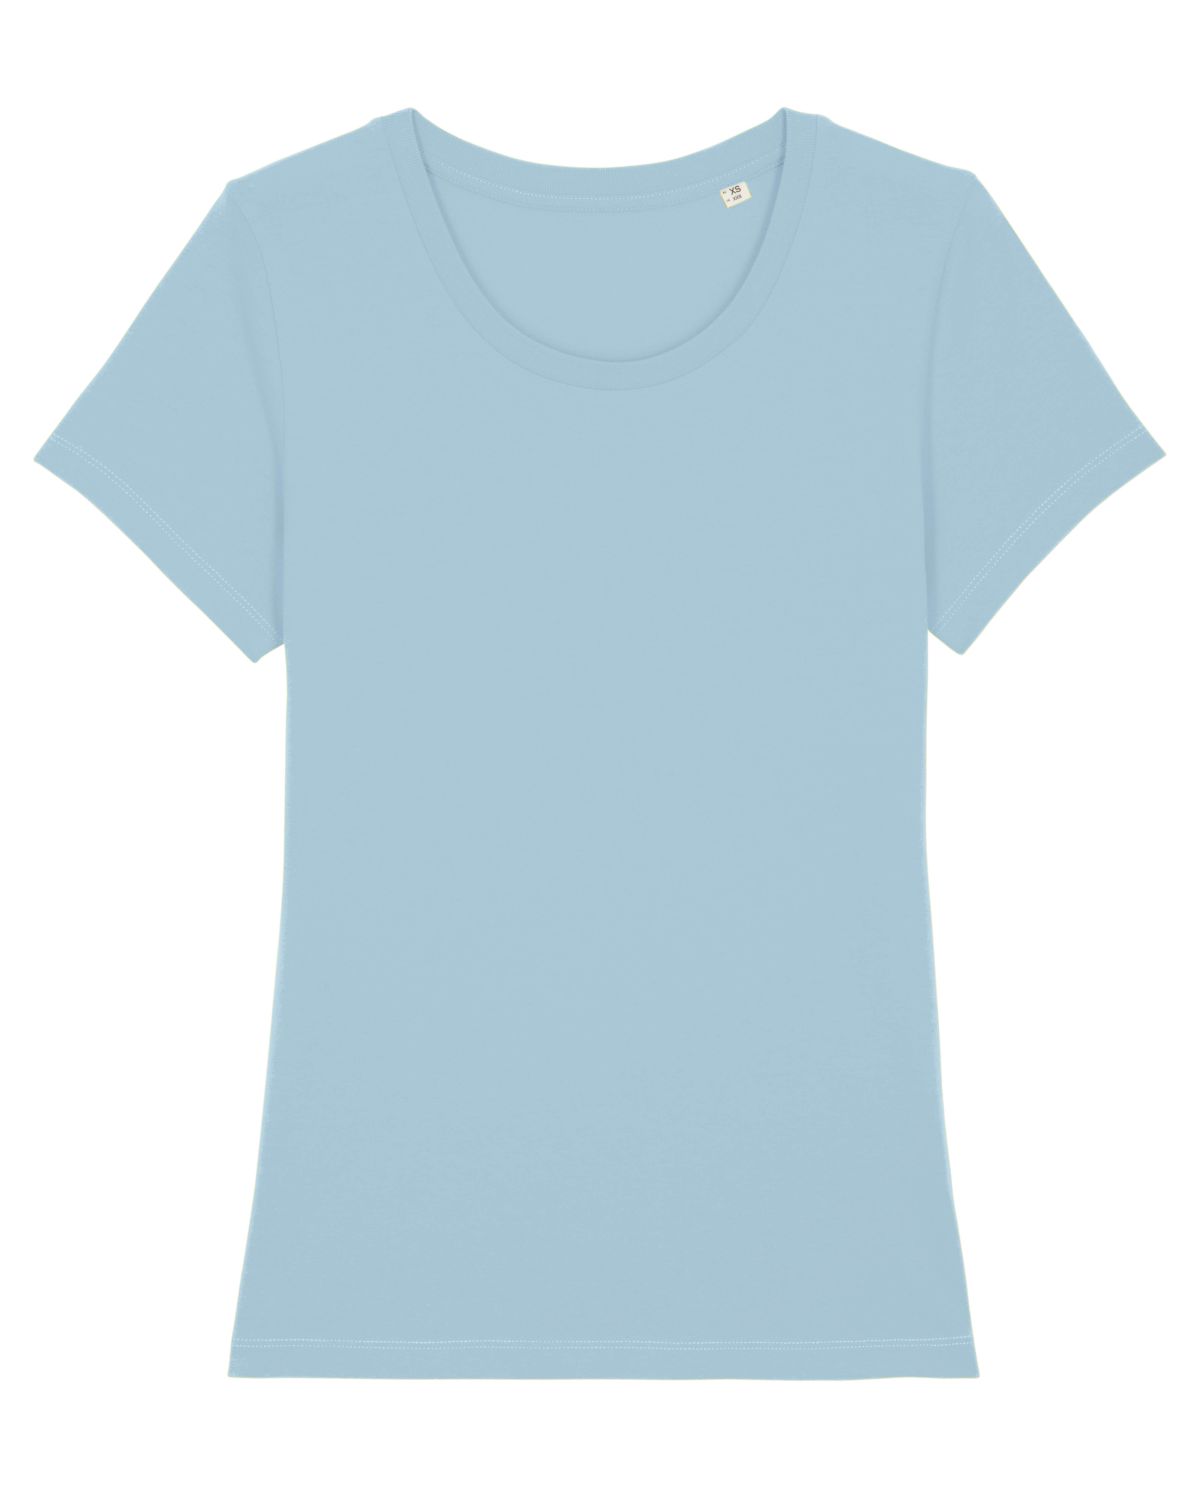 Stanley/Stella's - Stella Expresser T-shirt - Sky Blue